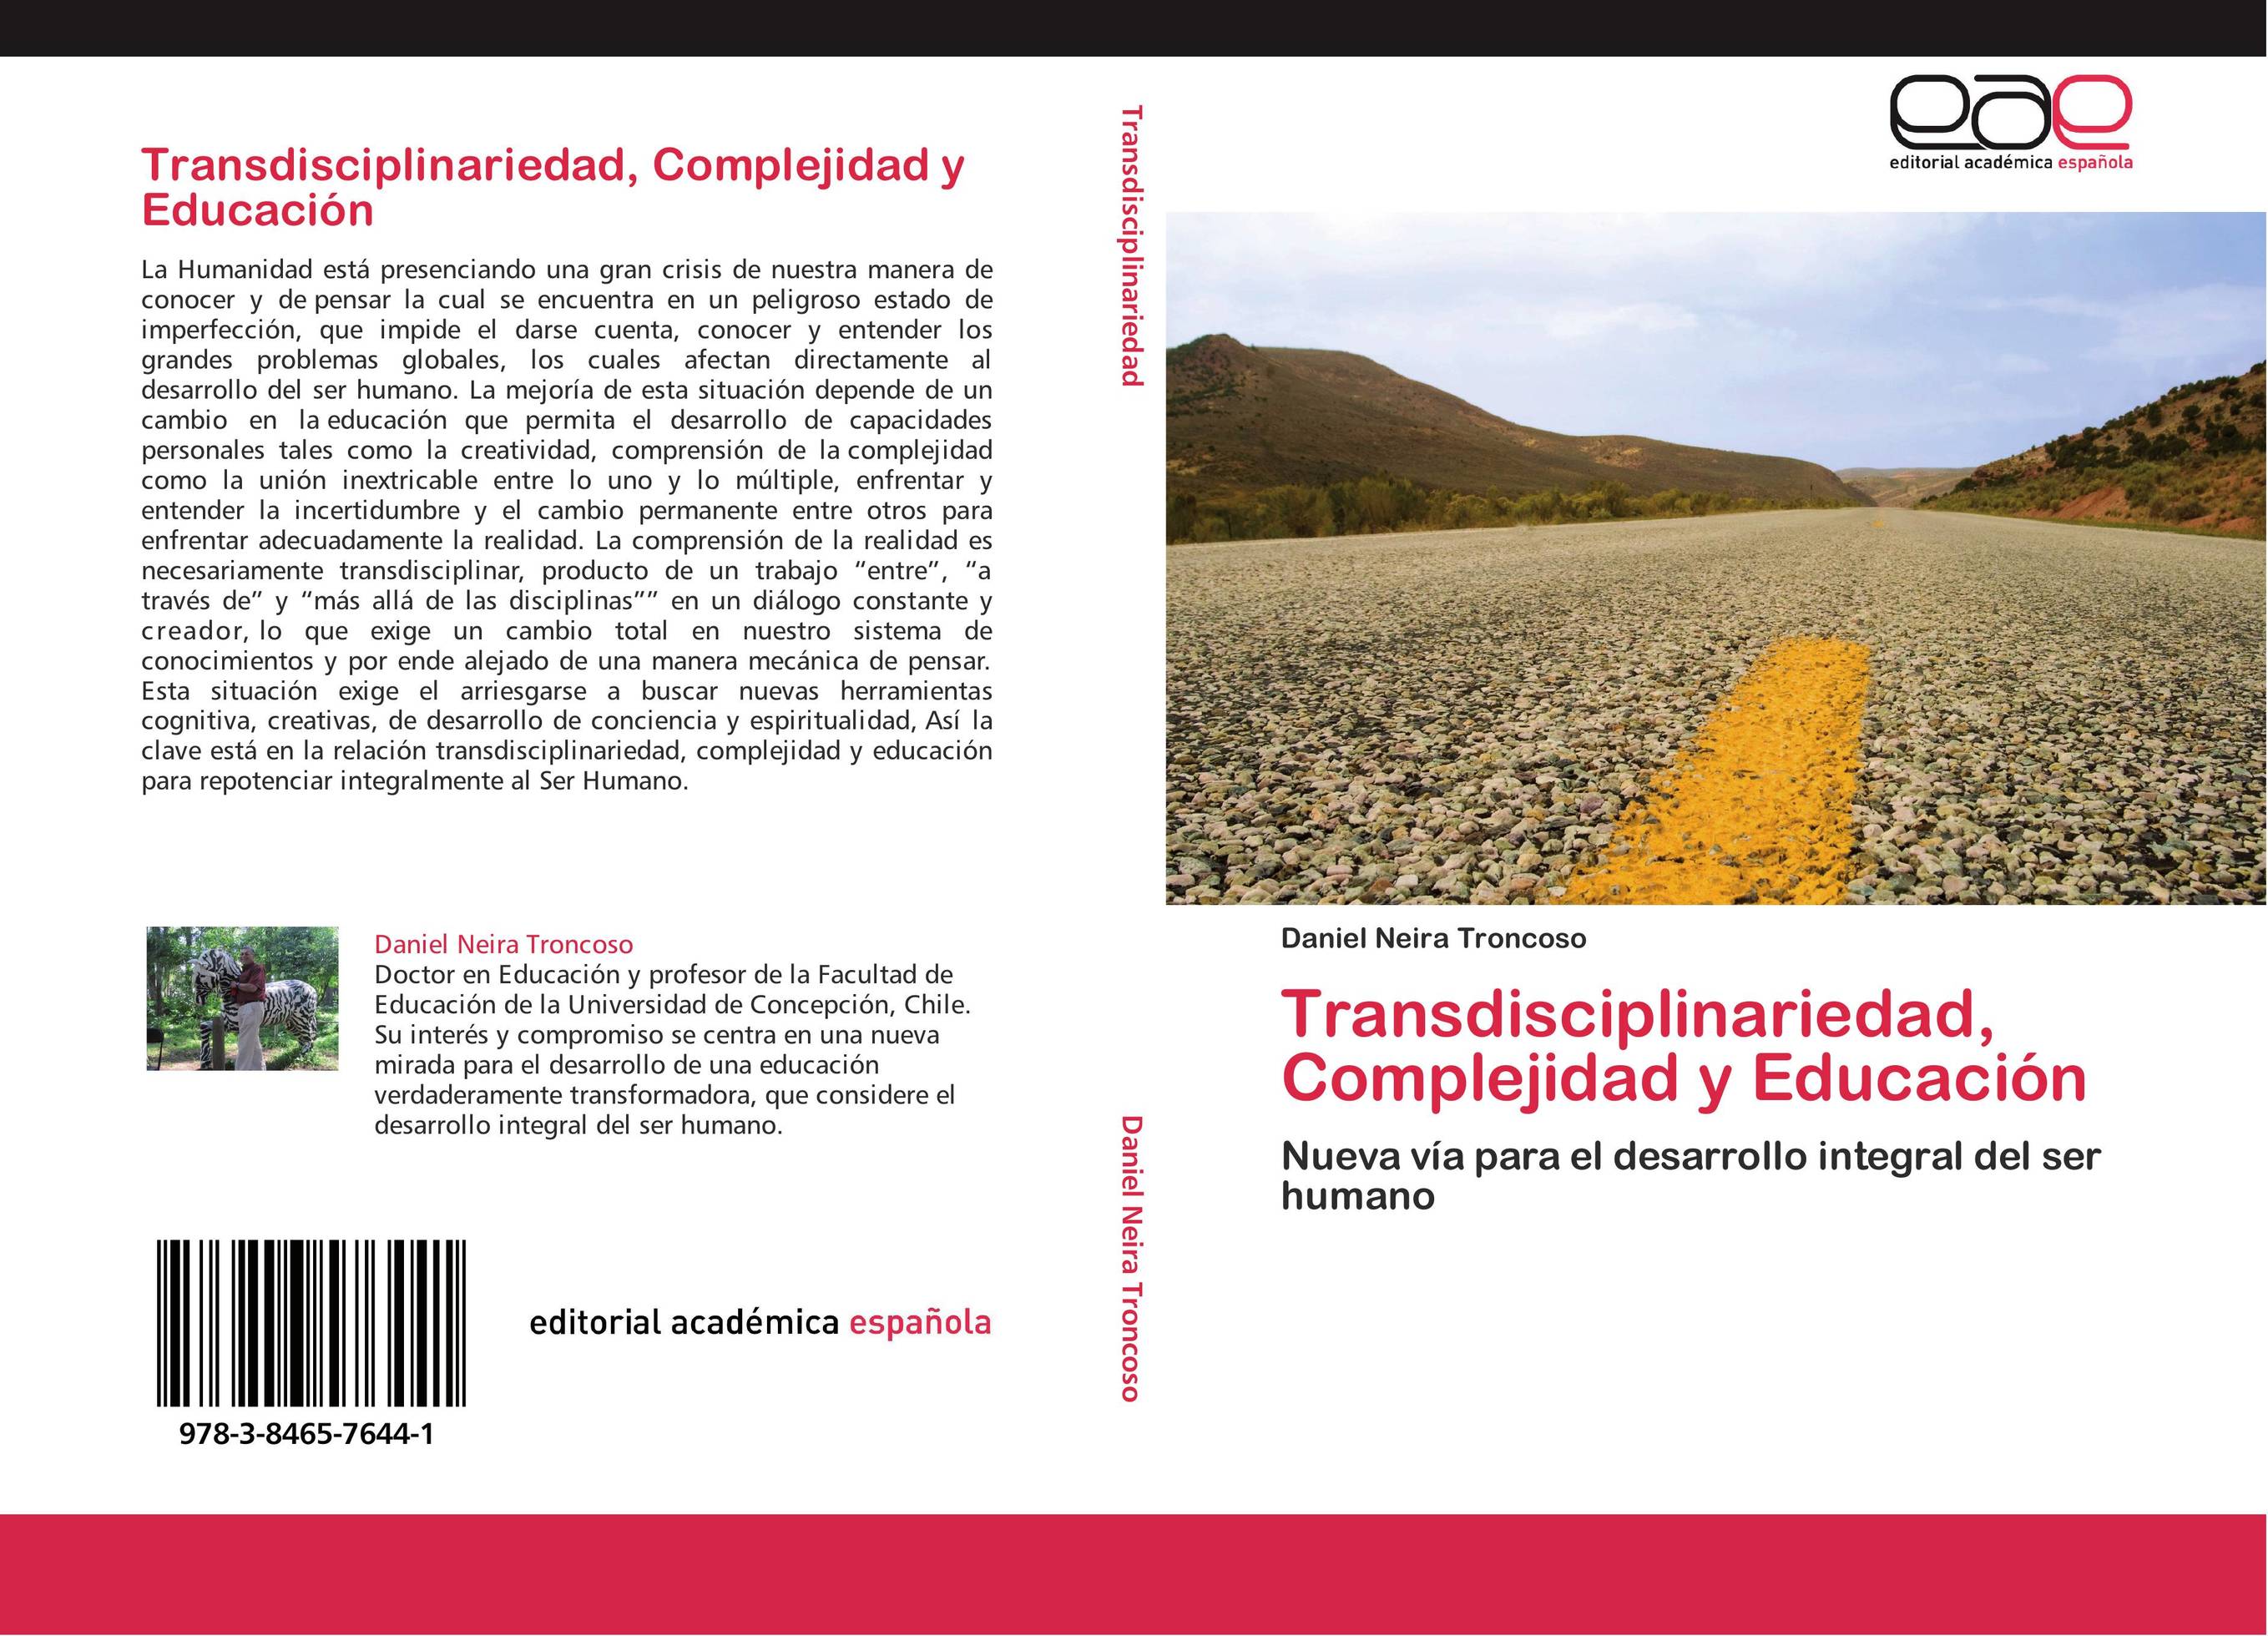 Transdisciplinariedad, Complejidad y Educación